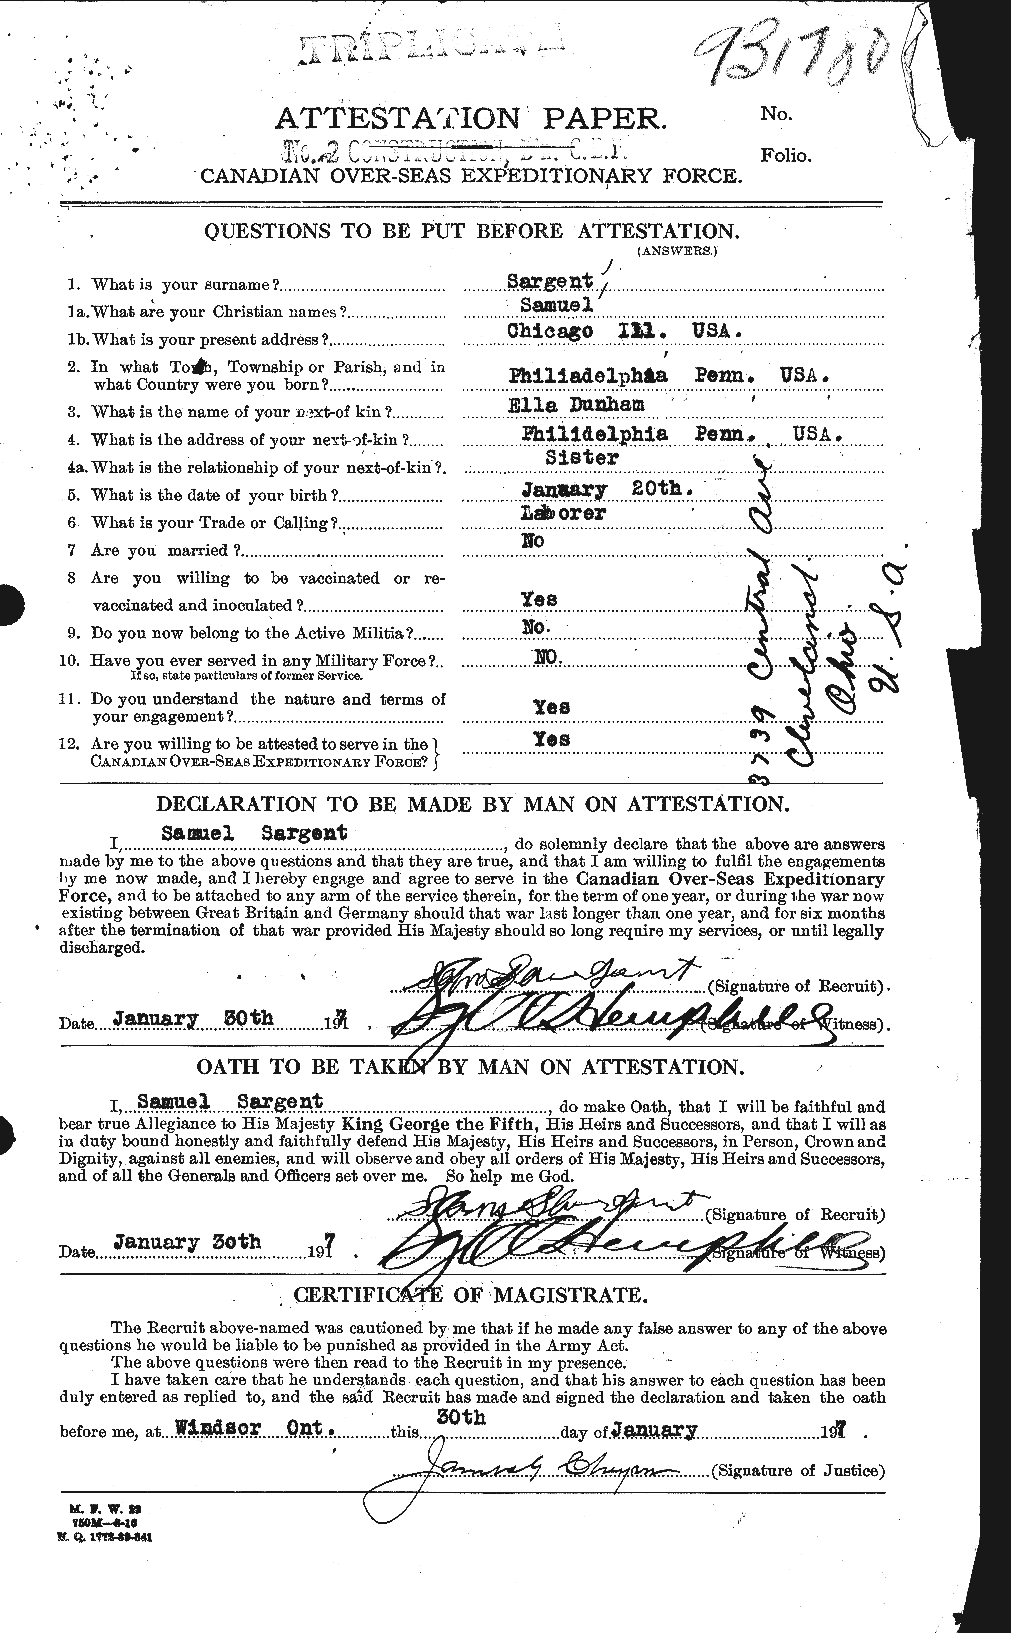 Dossiers du Personnel de la Première Guerre mondiale - CEC 079118a